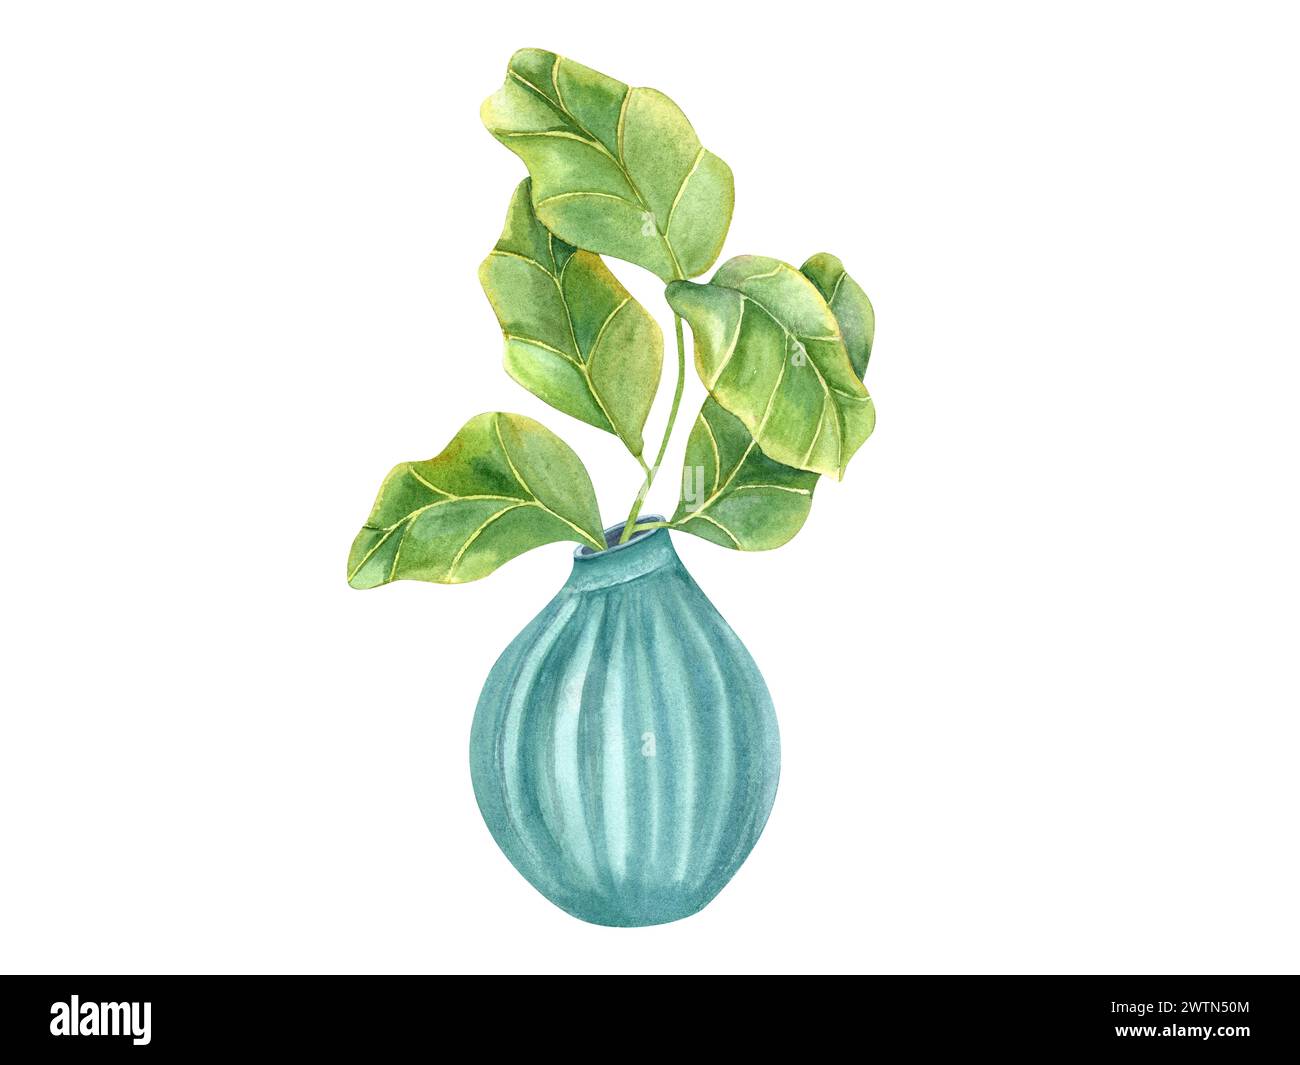 Stilvolle Pflanze mit riesigen grünen Blättern in blauem Keramiktopf. Zimmerpflanzen mit Geige-Blatt-Feige. Inneneinrichtung, Label, Logo, Grußworte. Gartenarbeit im Innenbereich. Stockfoto